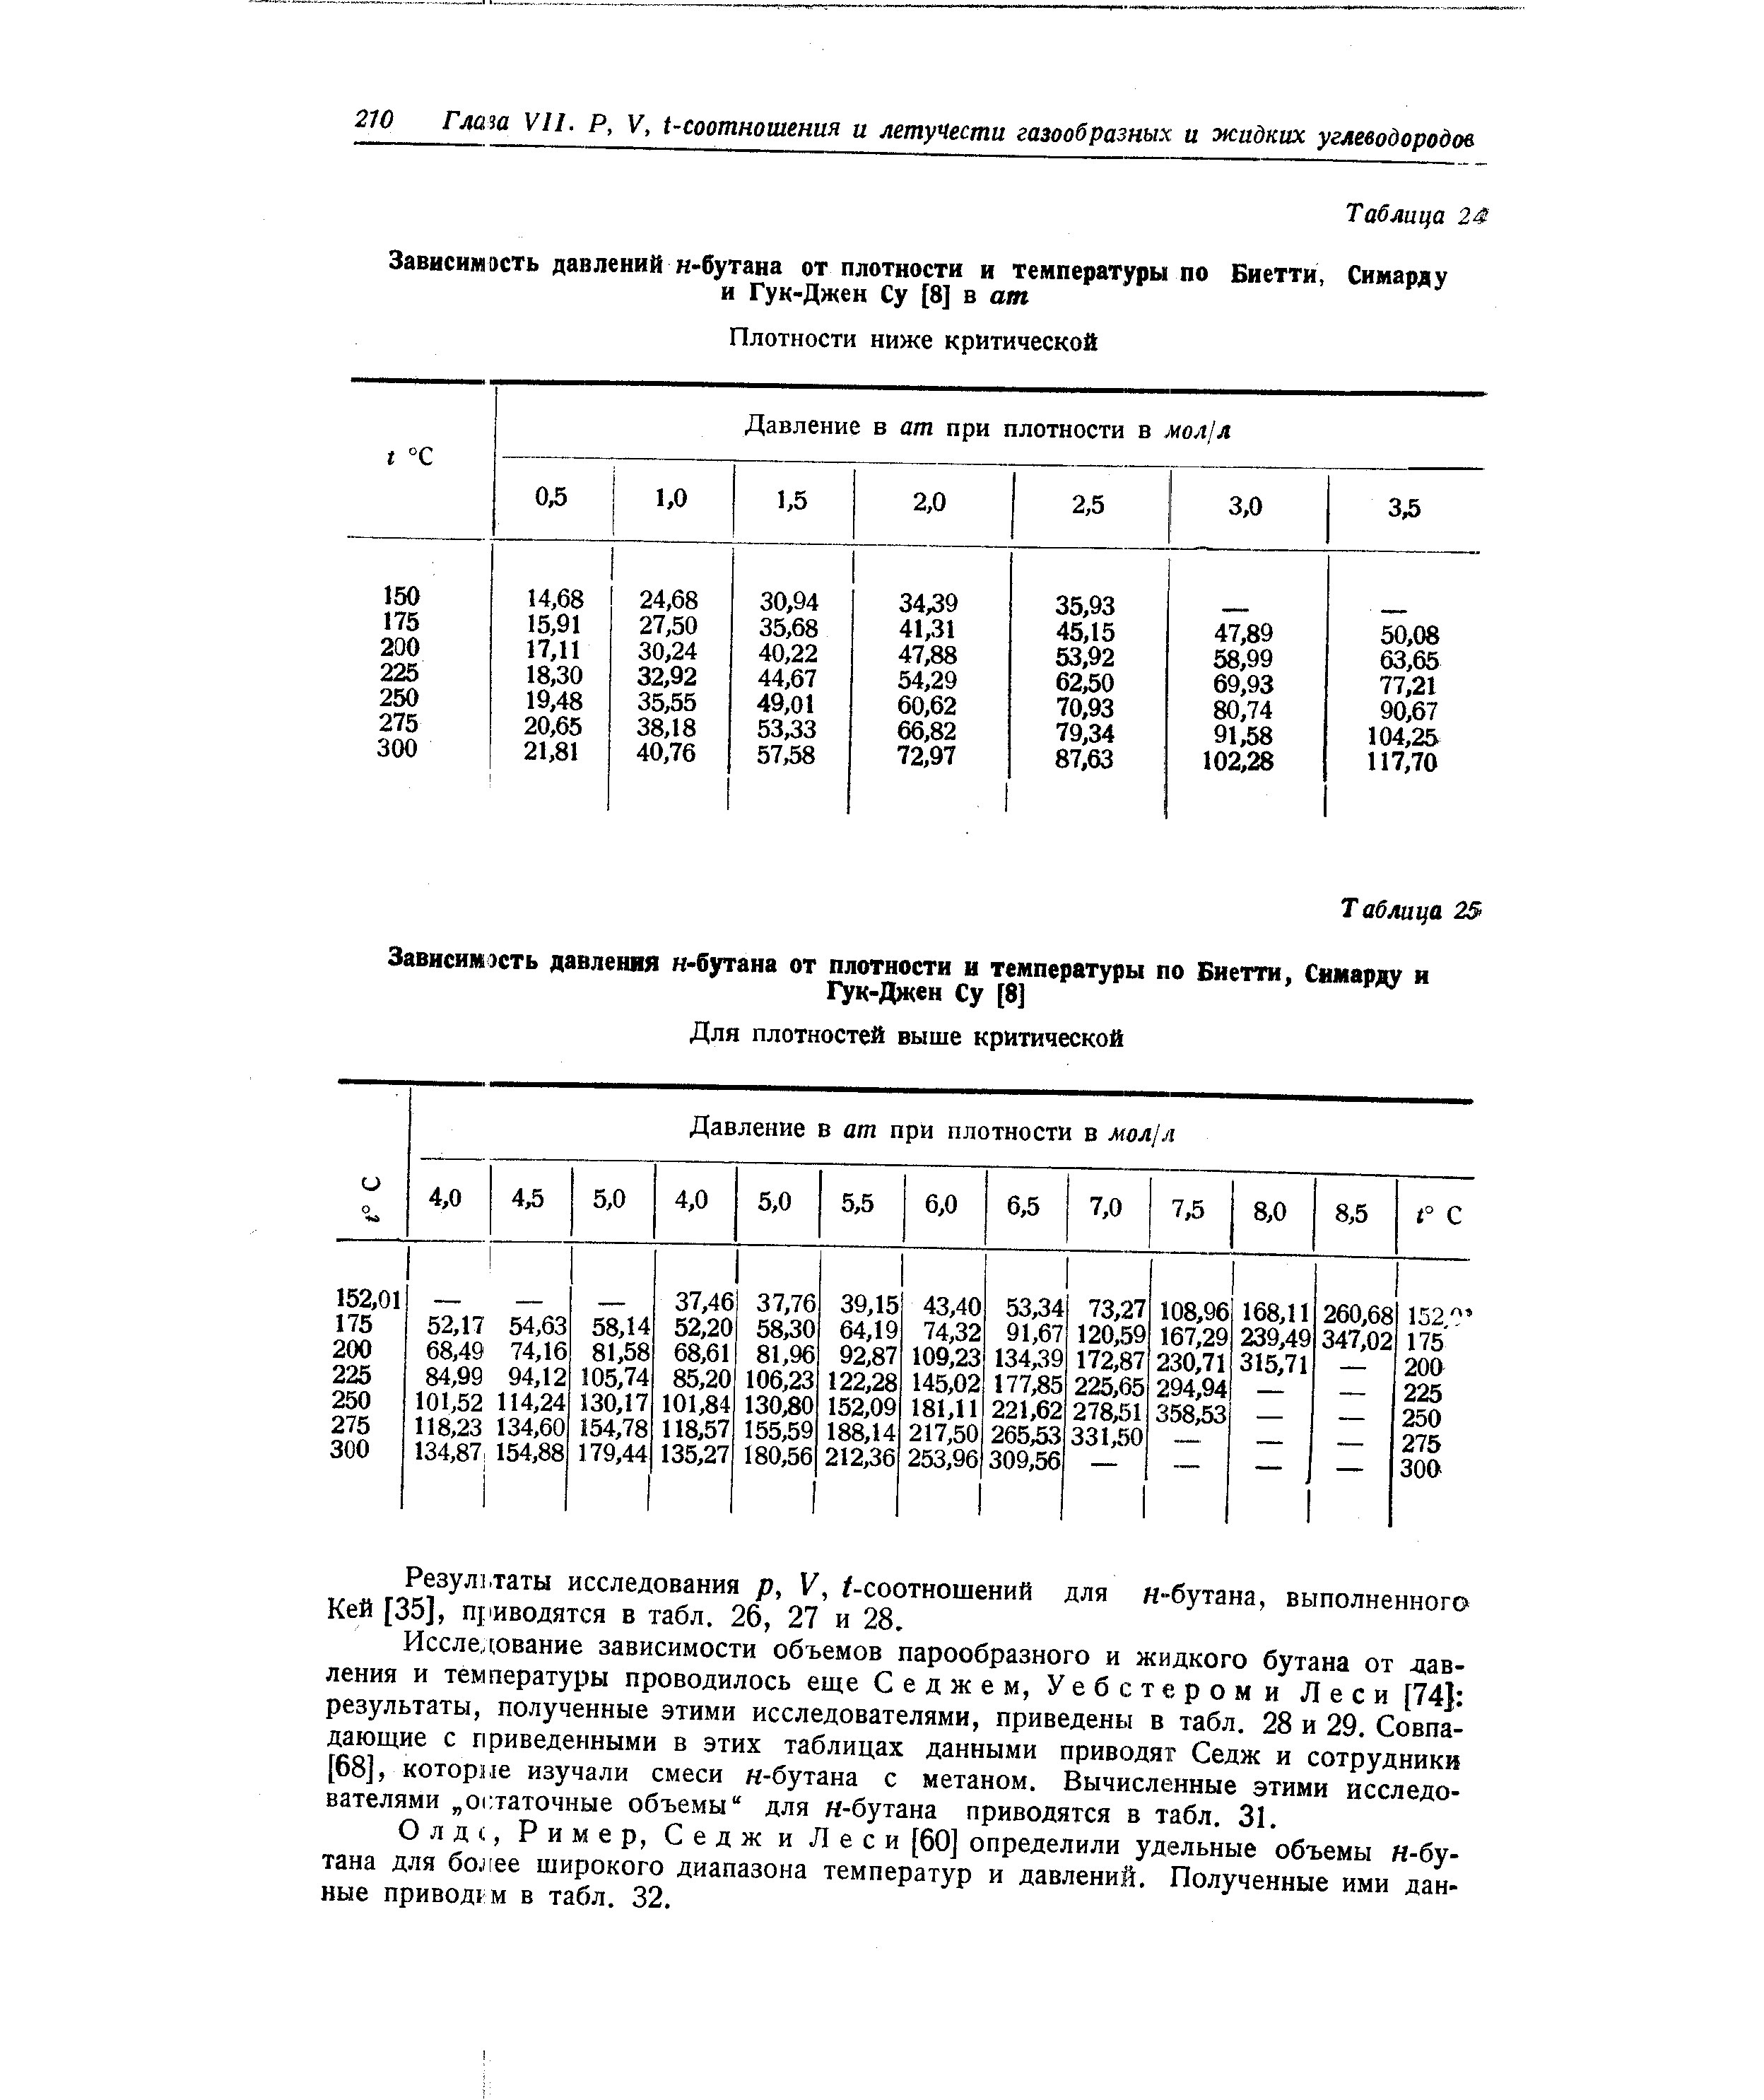 Результаты исследования р, V, /-соотношений для н-бутана, выполненного Кей [35], приводятся в табл. 26, 27 и 28.